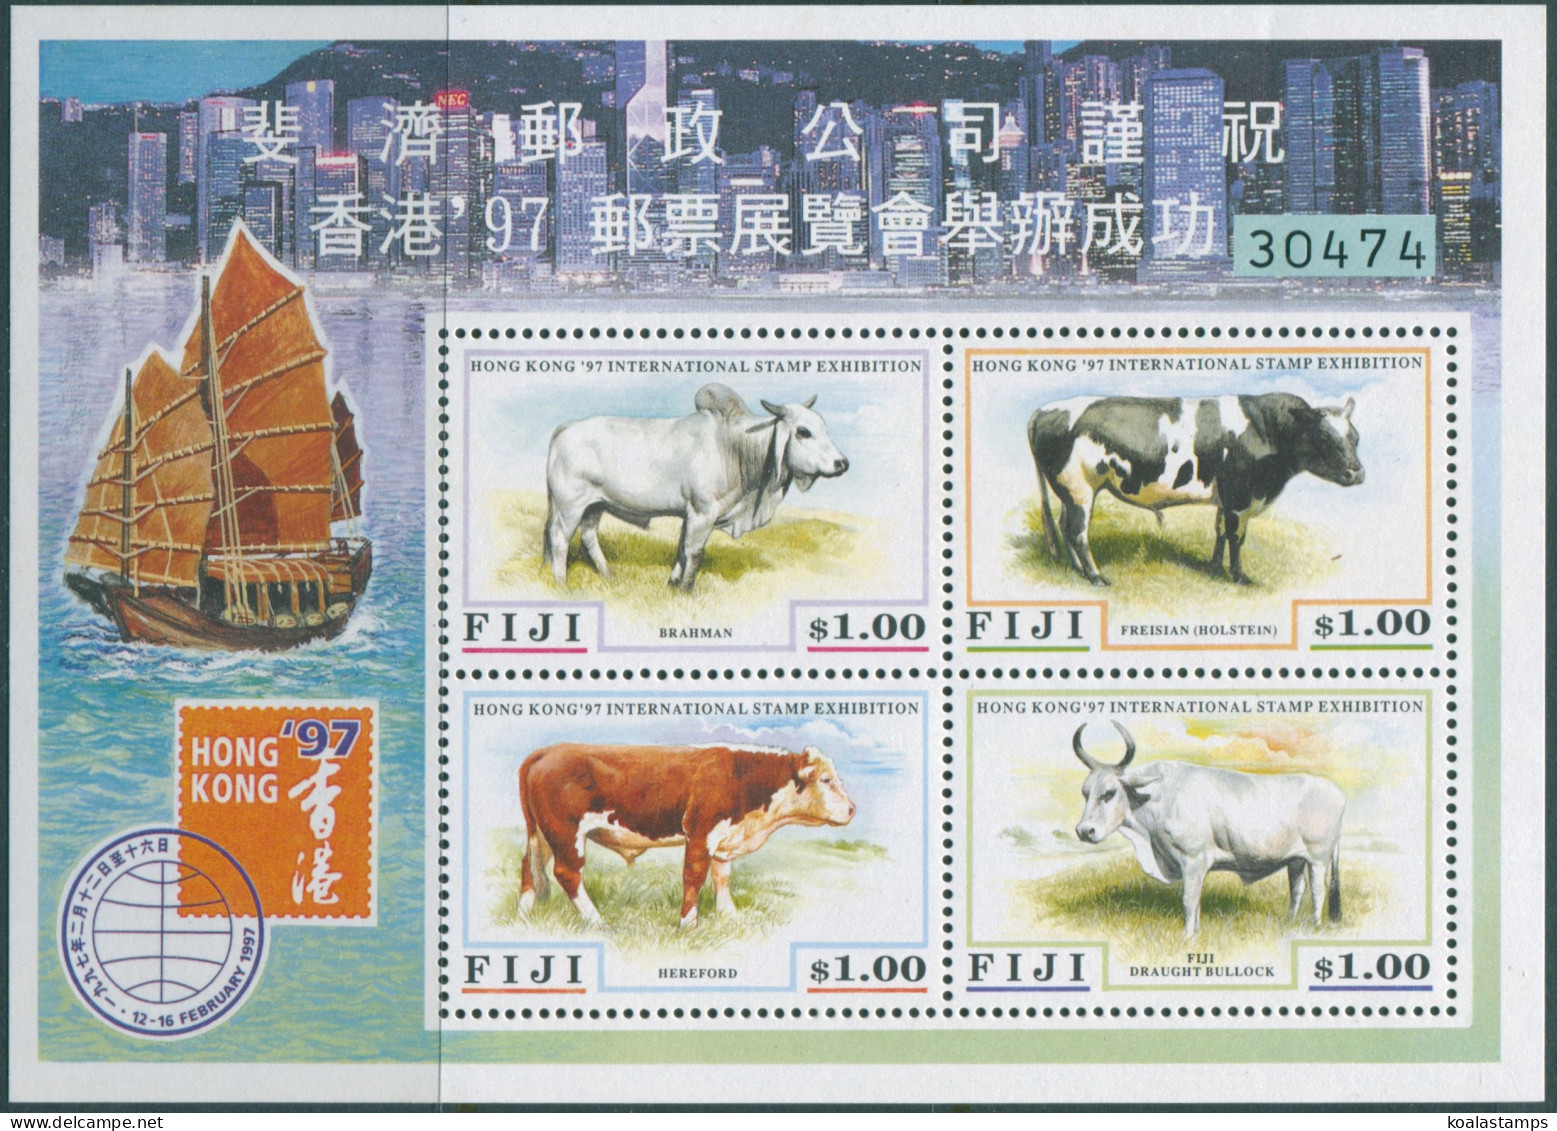 Fiji 1997 SG975 Cattle Hong Kong 97 MS MNH - Fiji (1970-...)